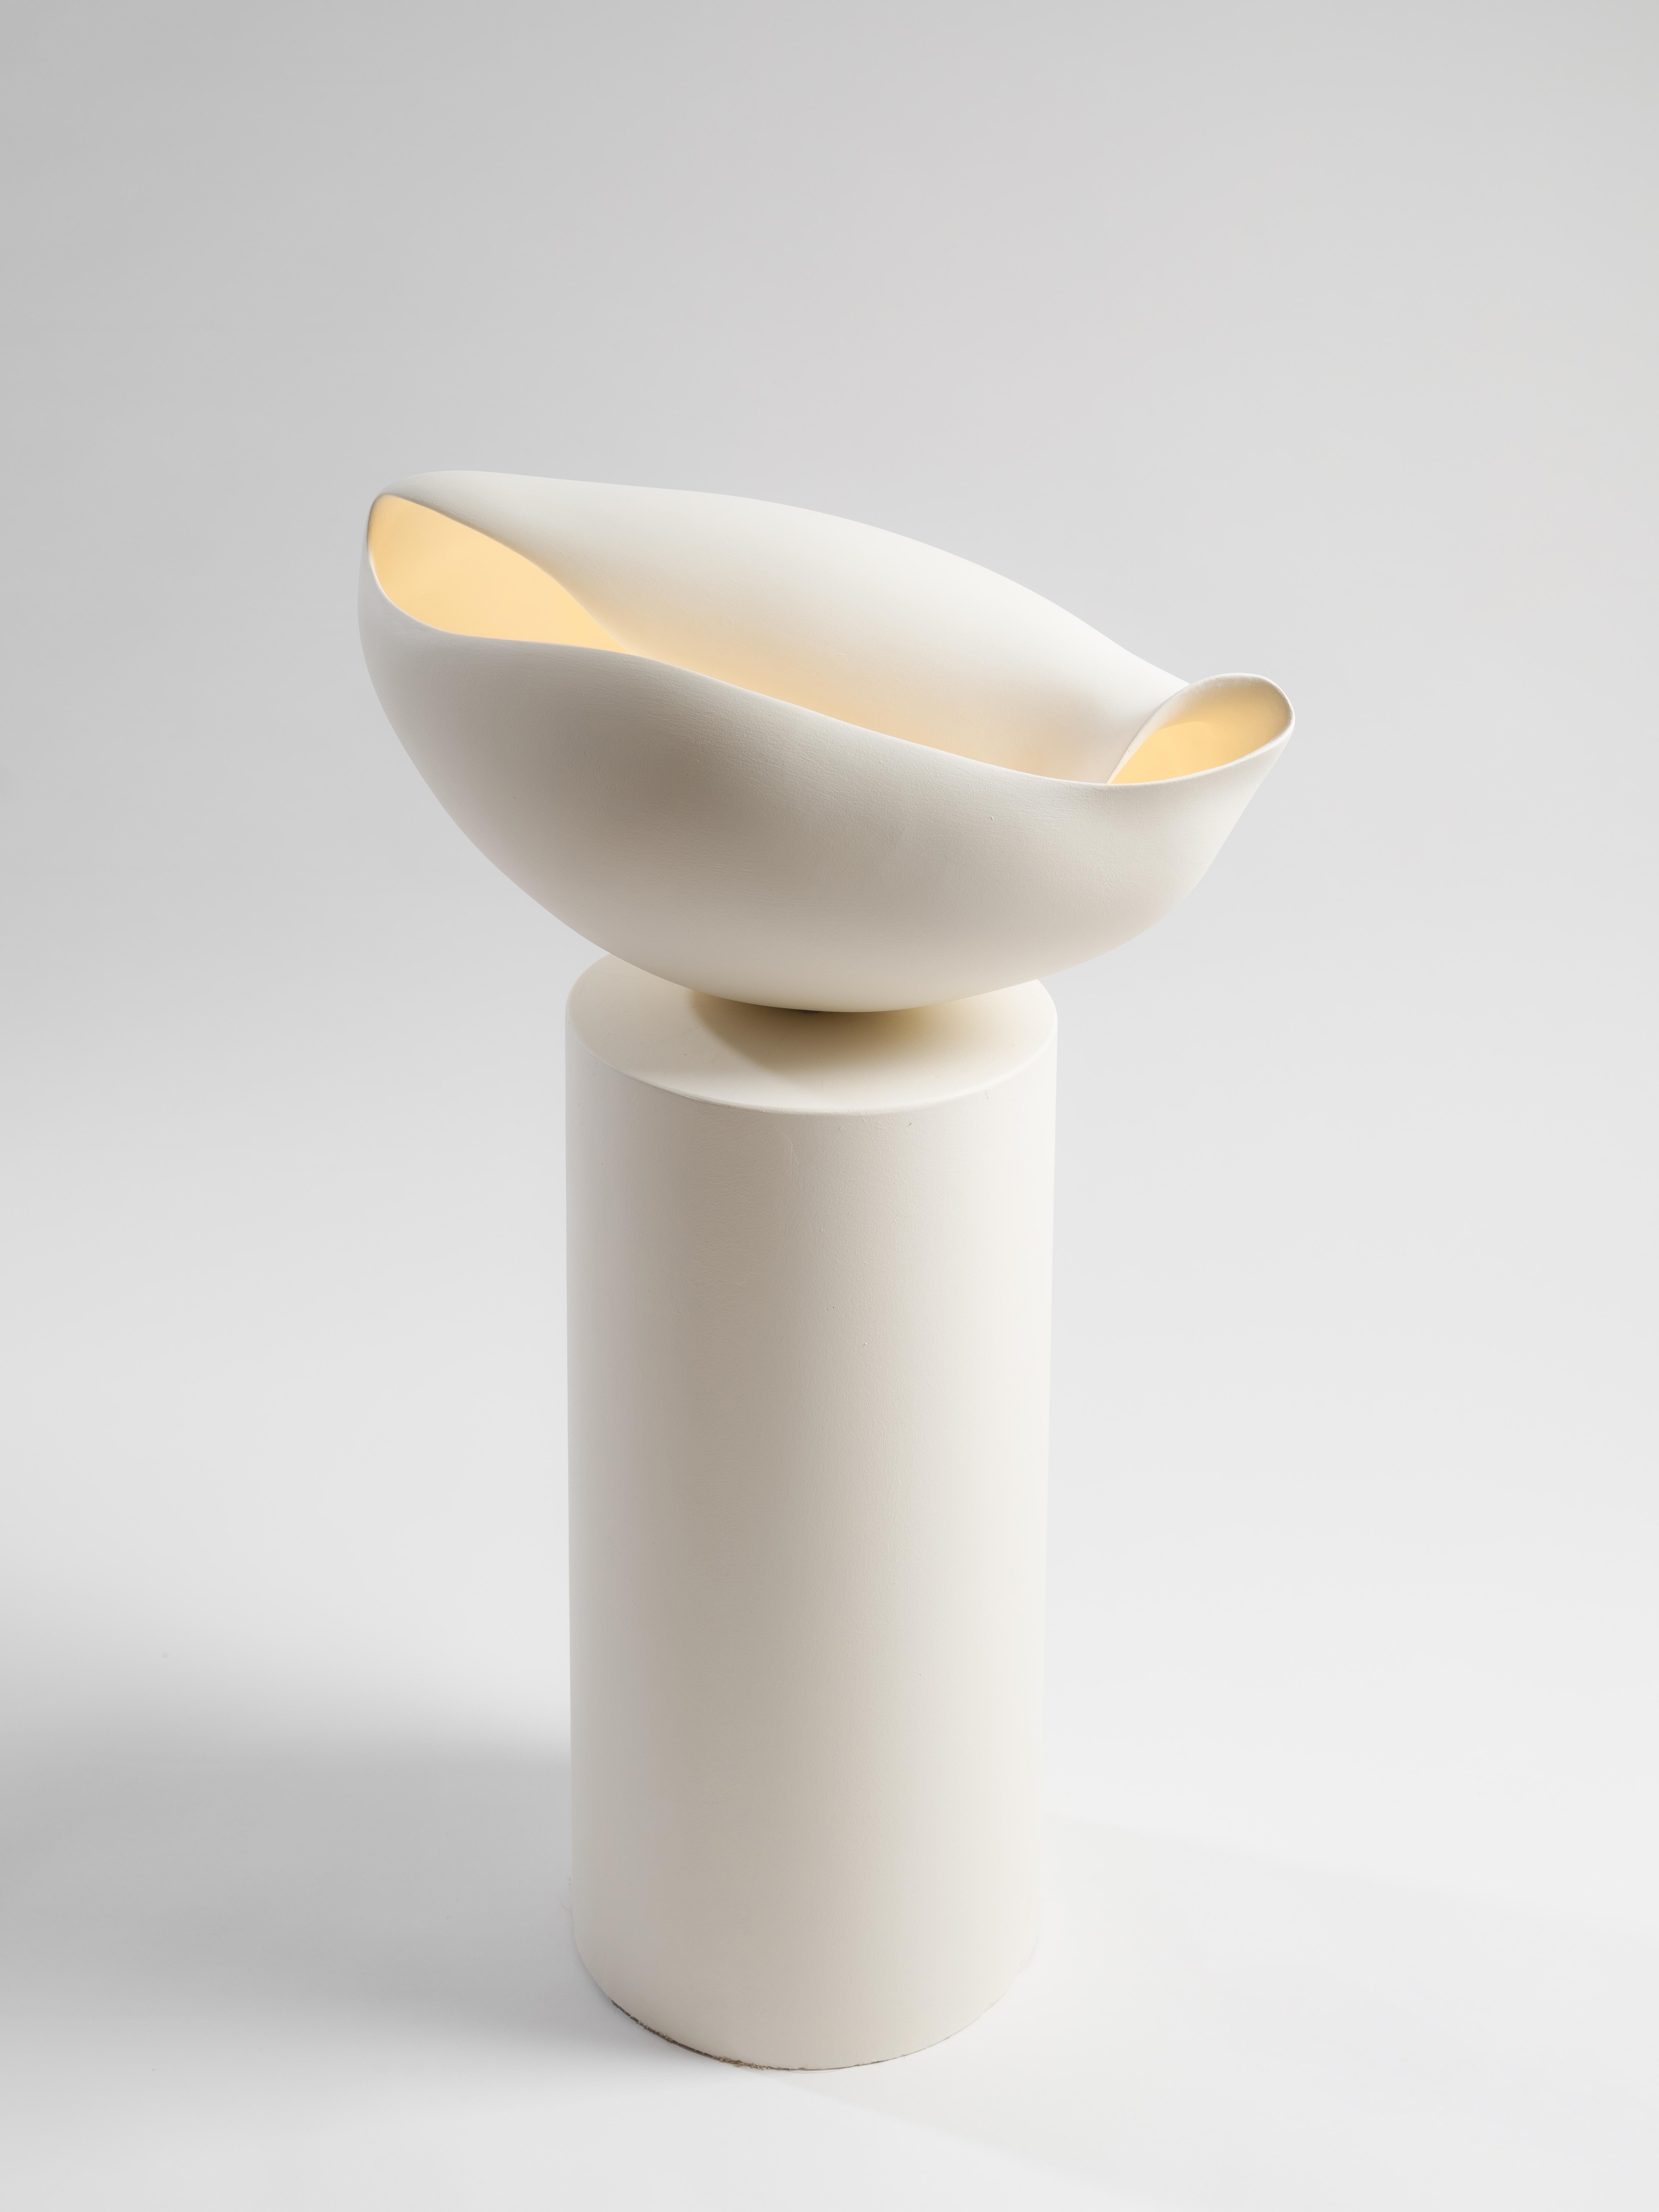 Nautile III. Stehlampe von Elsa Foulon
Abmessungen: D 50 x H 90 cm.
MATERIALIEN: Keramik, Gips.
Auch in anderen Abmessungen erhältlich.

Alle unsere Lampen können je nach Land verkabelt werden. Wenn es in die USA verkauft wird, wird es zum Beispiel